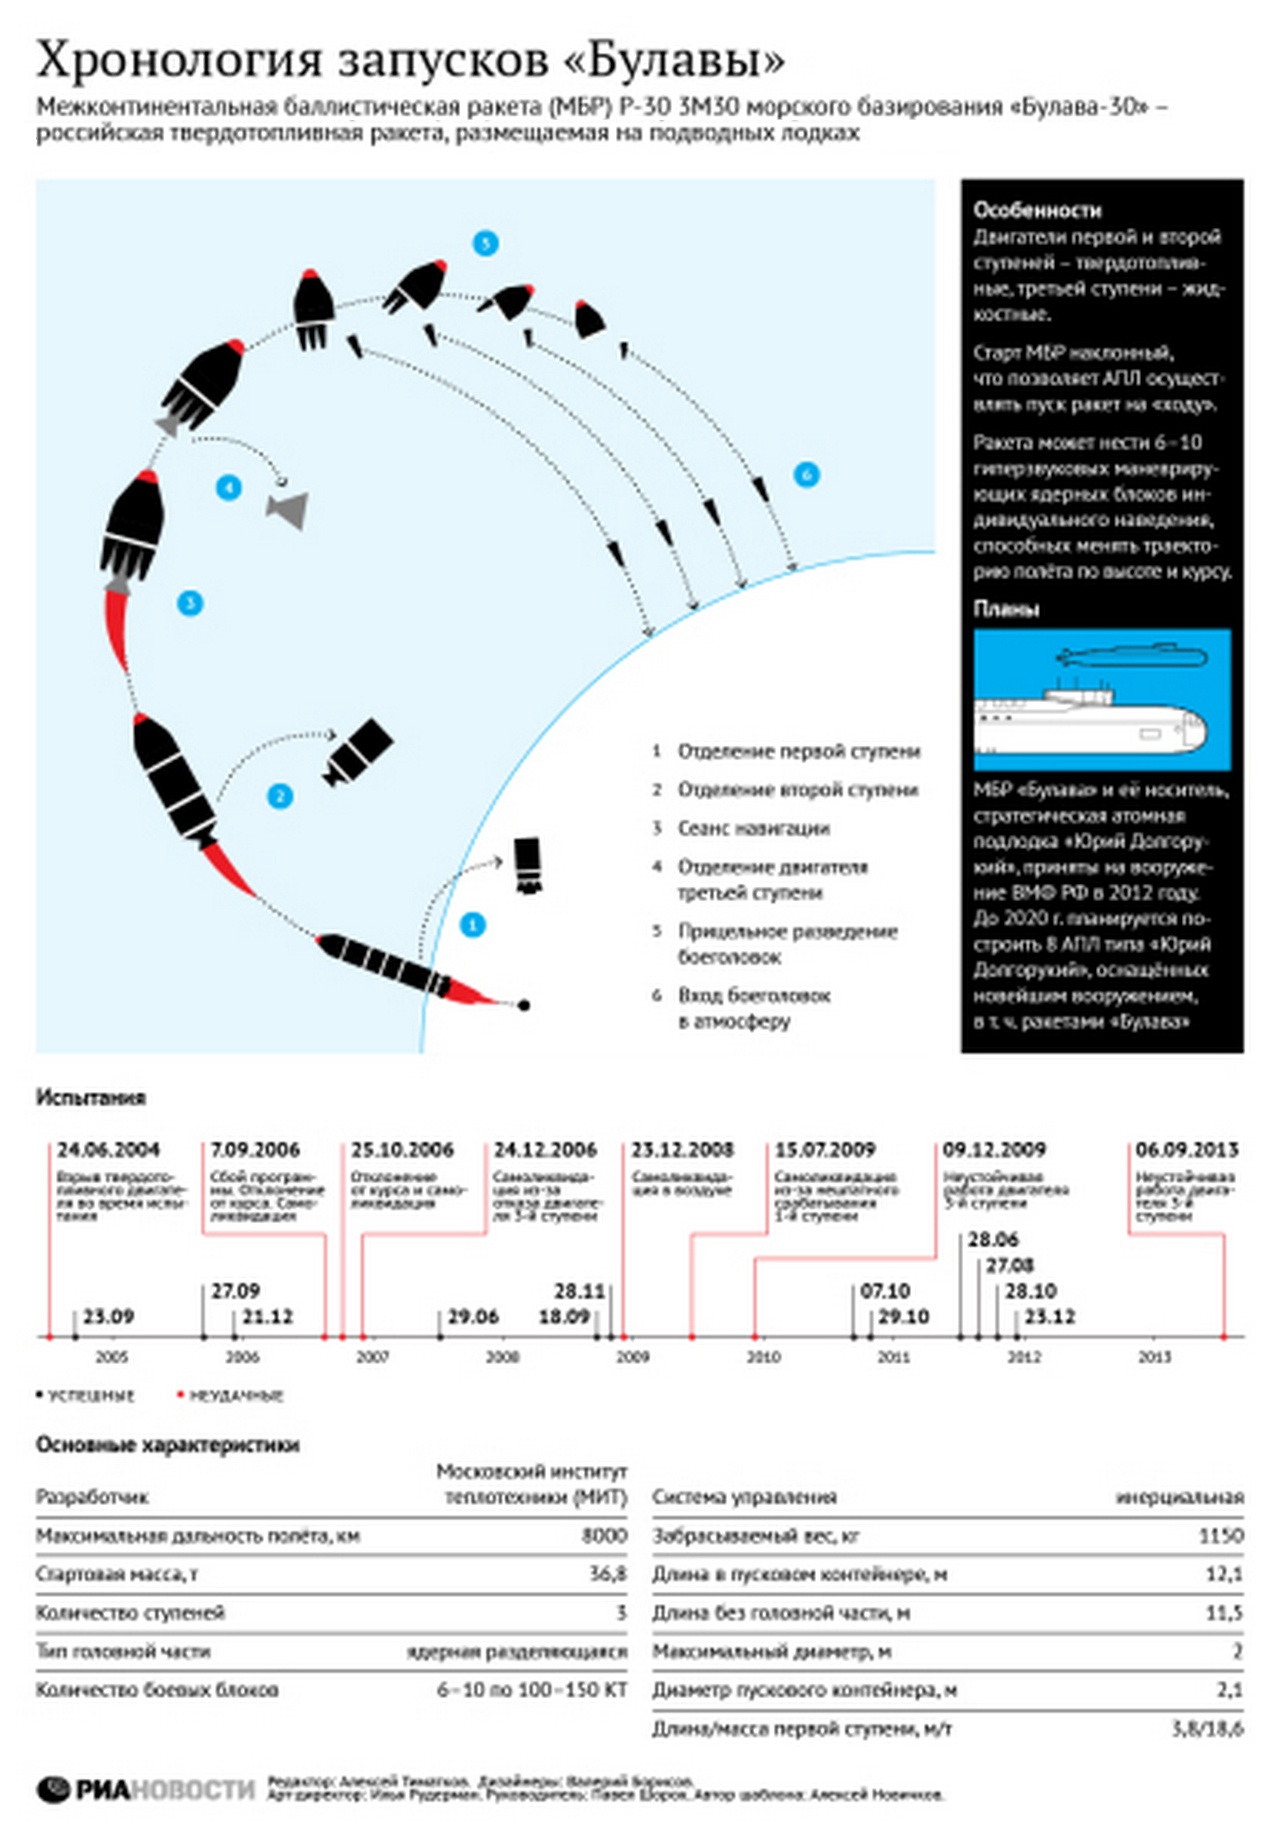 Запуски межконтинентальной баллистической ракеты морского базирования «Булава-30».